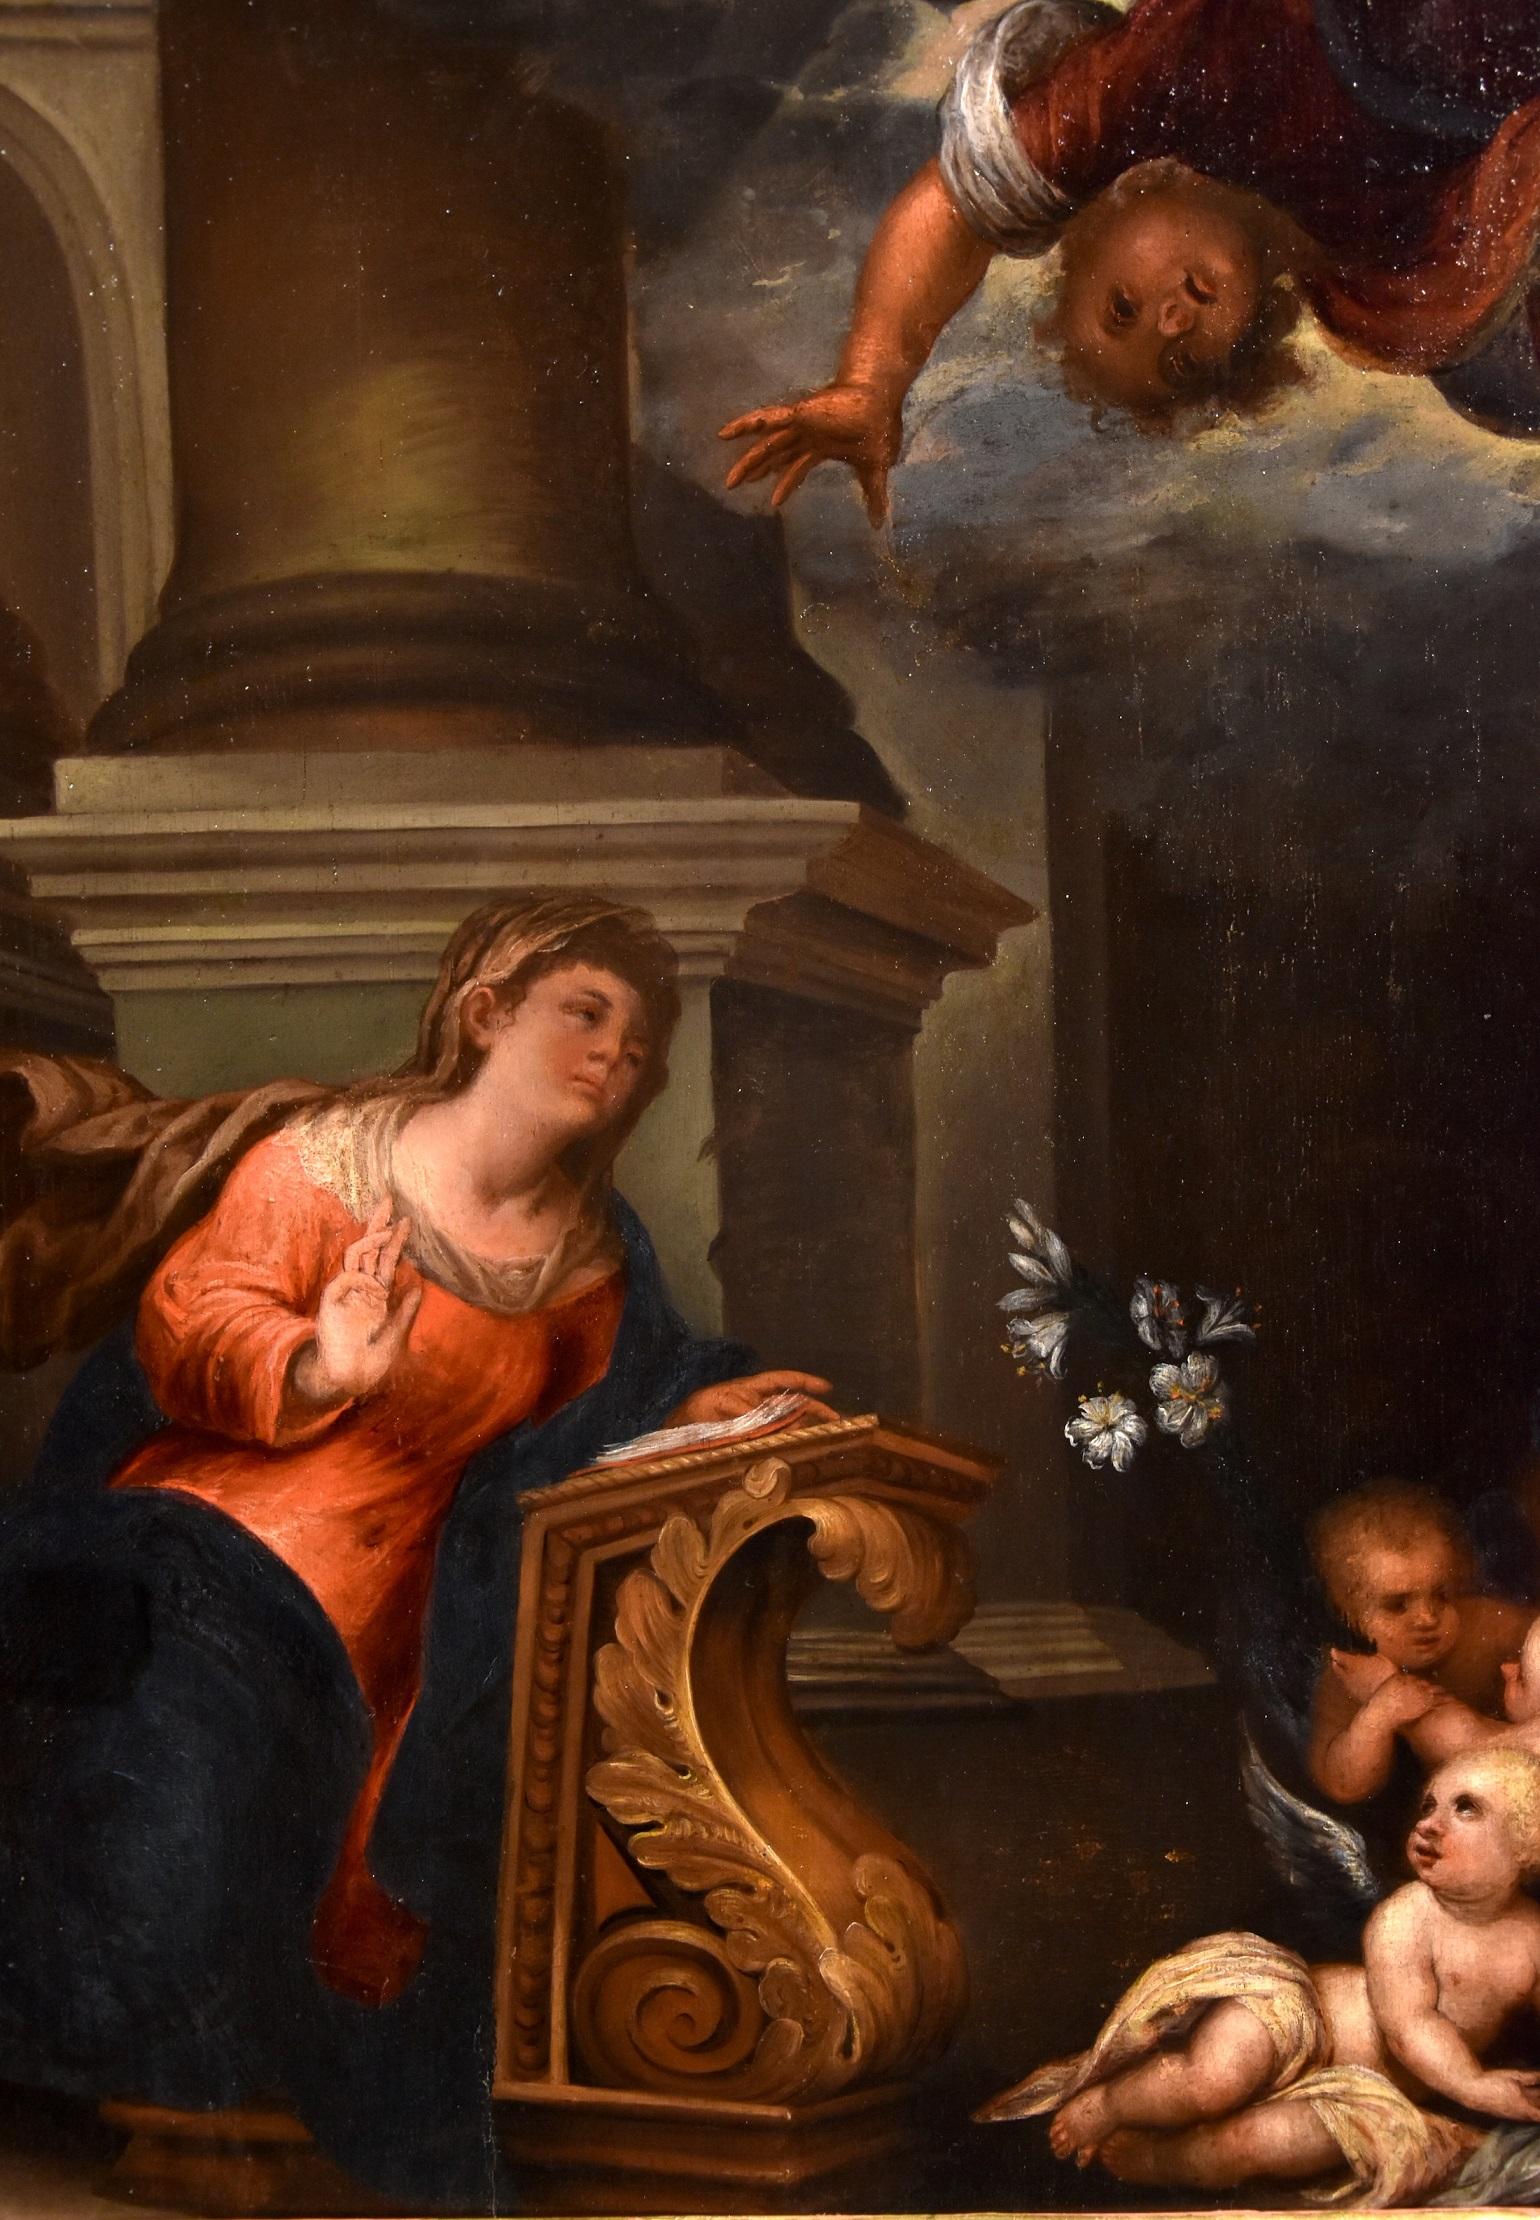 Ansaldo Annunciation Paint Oil on canvas Old master 17th Century Italian Art 2